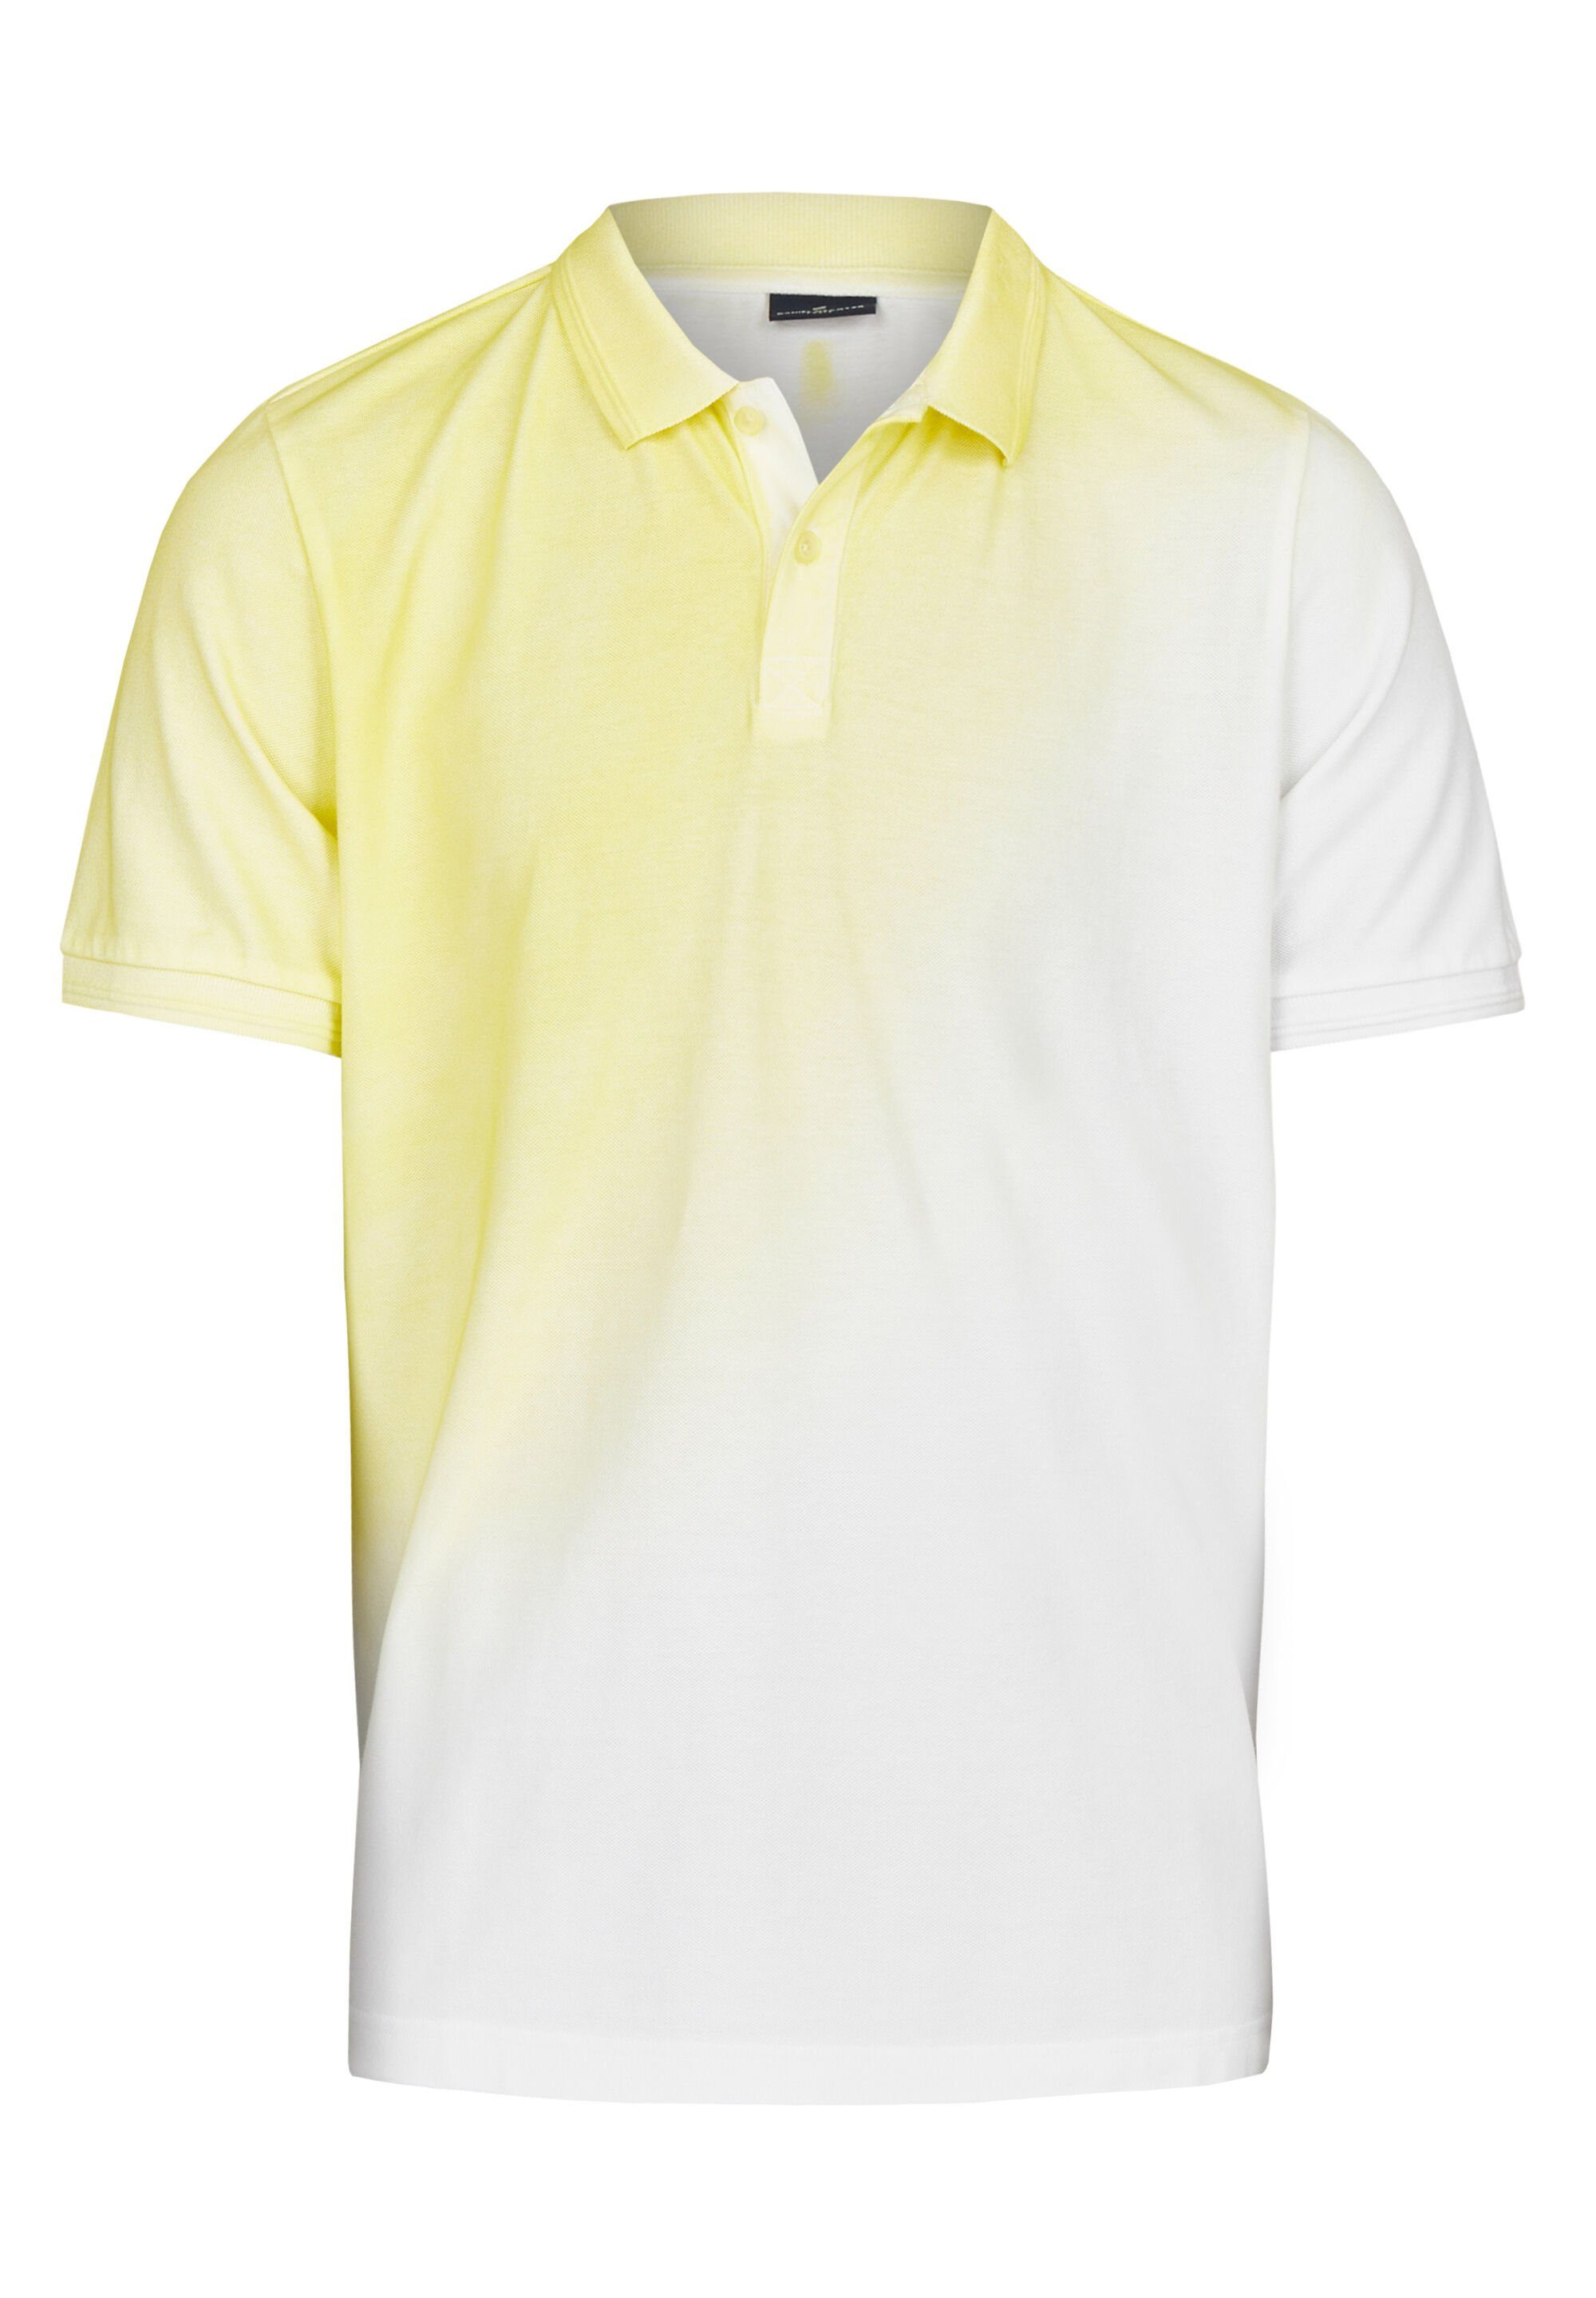 HECHTER PARIS Poloshirt mit ausgefallenem Spray-Dyed-Effekt vanilla | Sport-Poloshirts